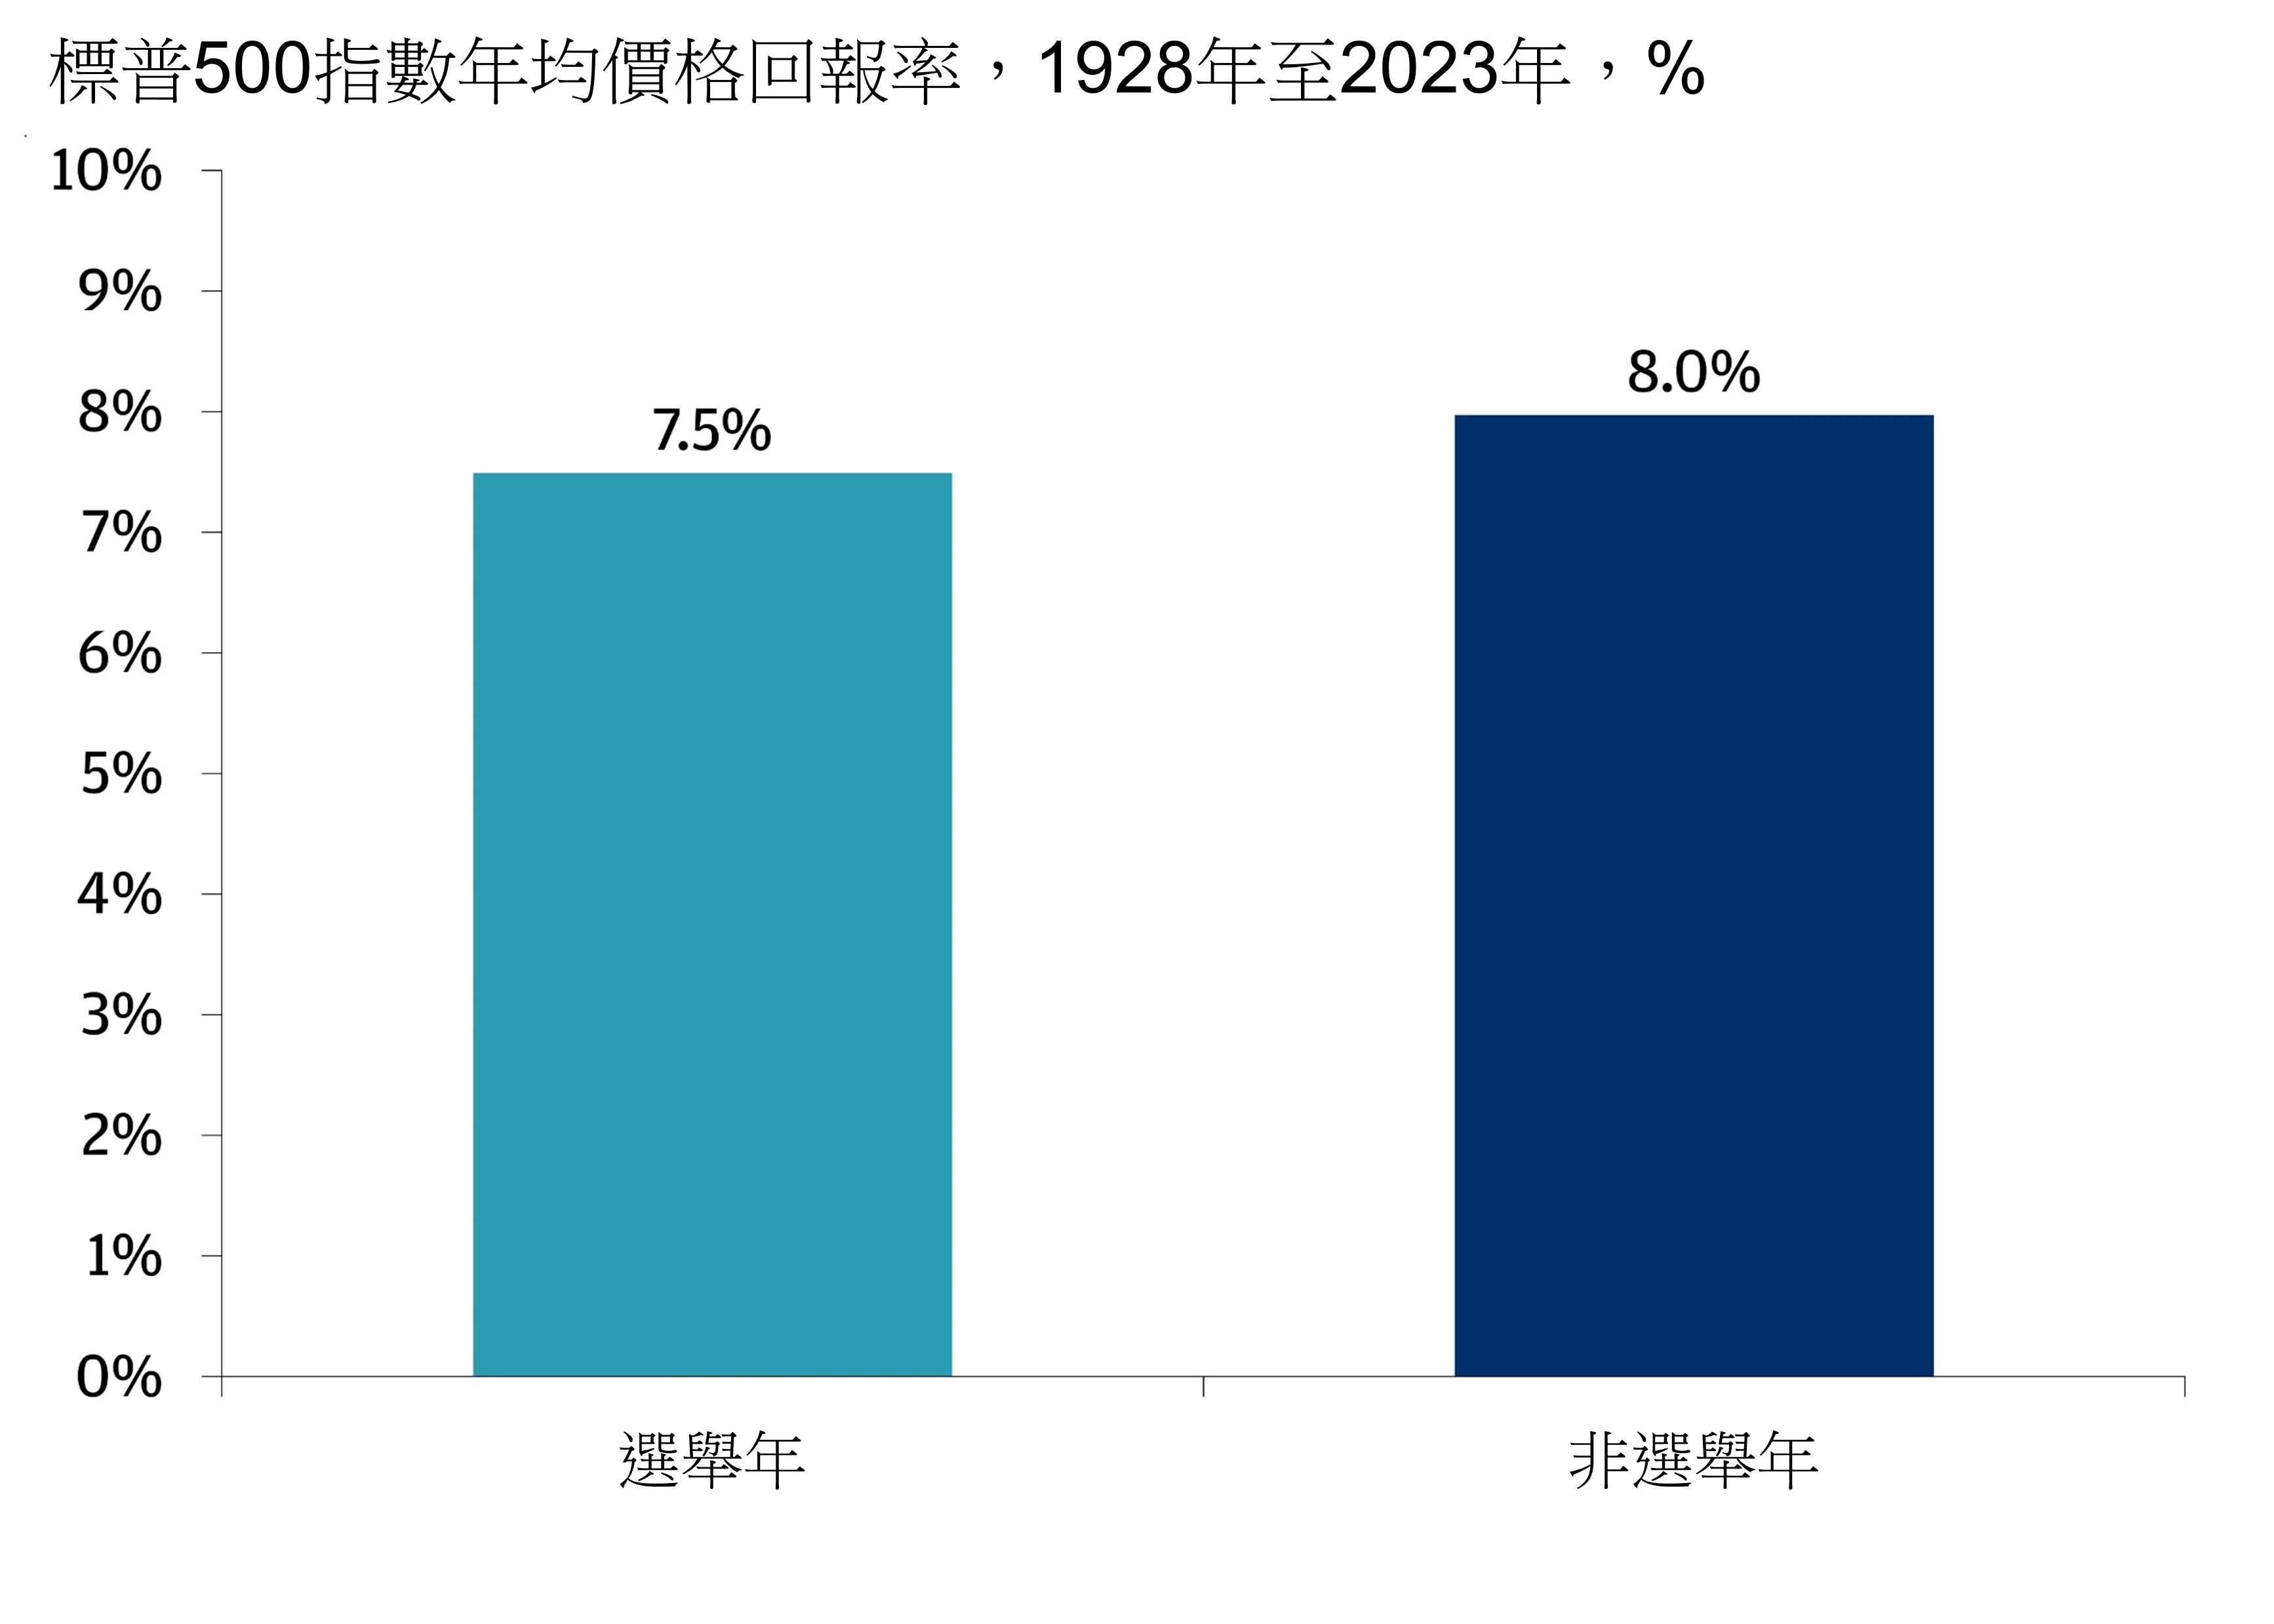 圖表顯示1926年至2023年標普500指數在選舉年與非選舉年的平均每年價格回報。在選舉年，平均回報率為7.5%，而非選舉年的平均回報率為8.0%。